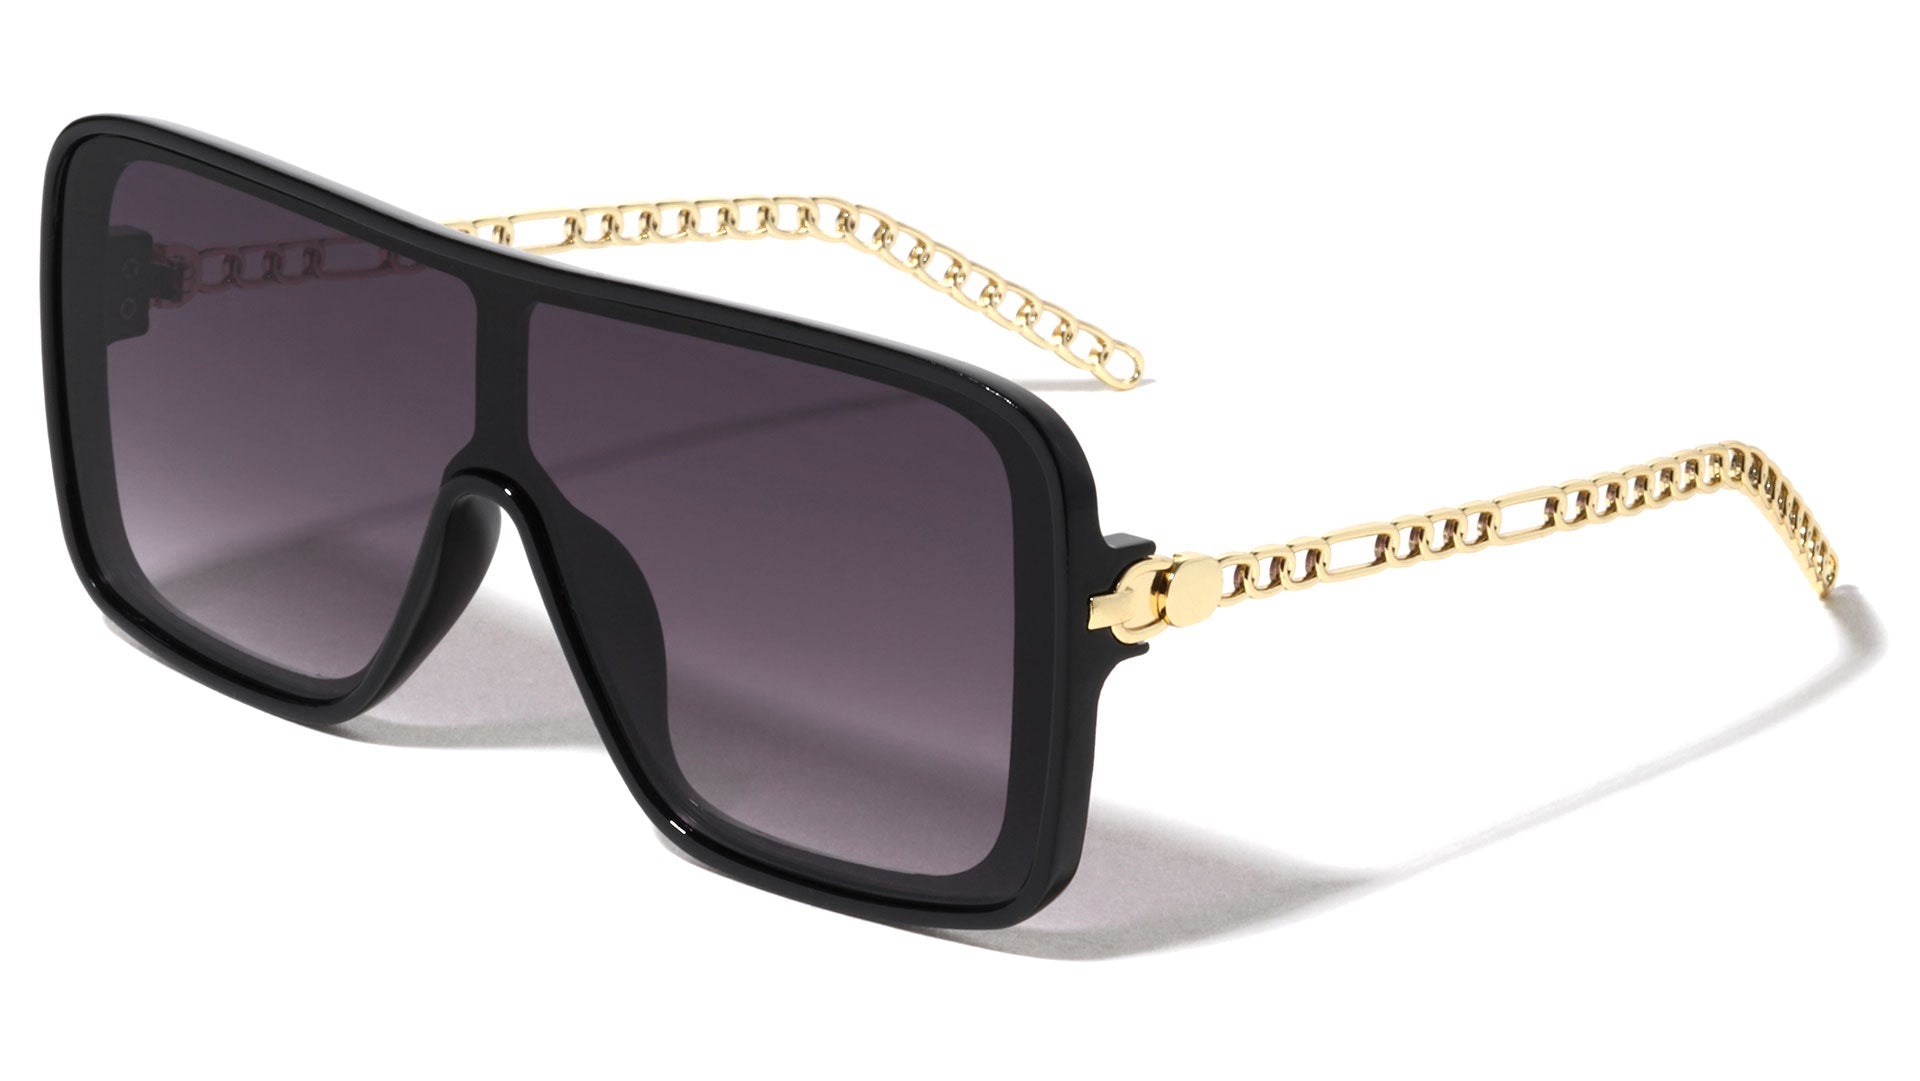 Chanel Single Chain Round Sunglasses